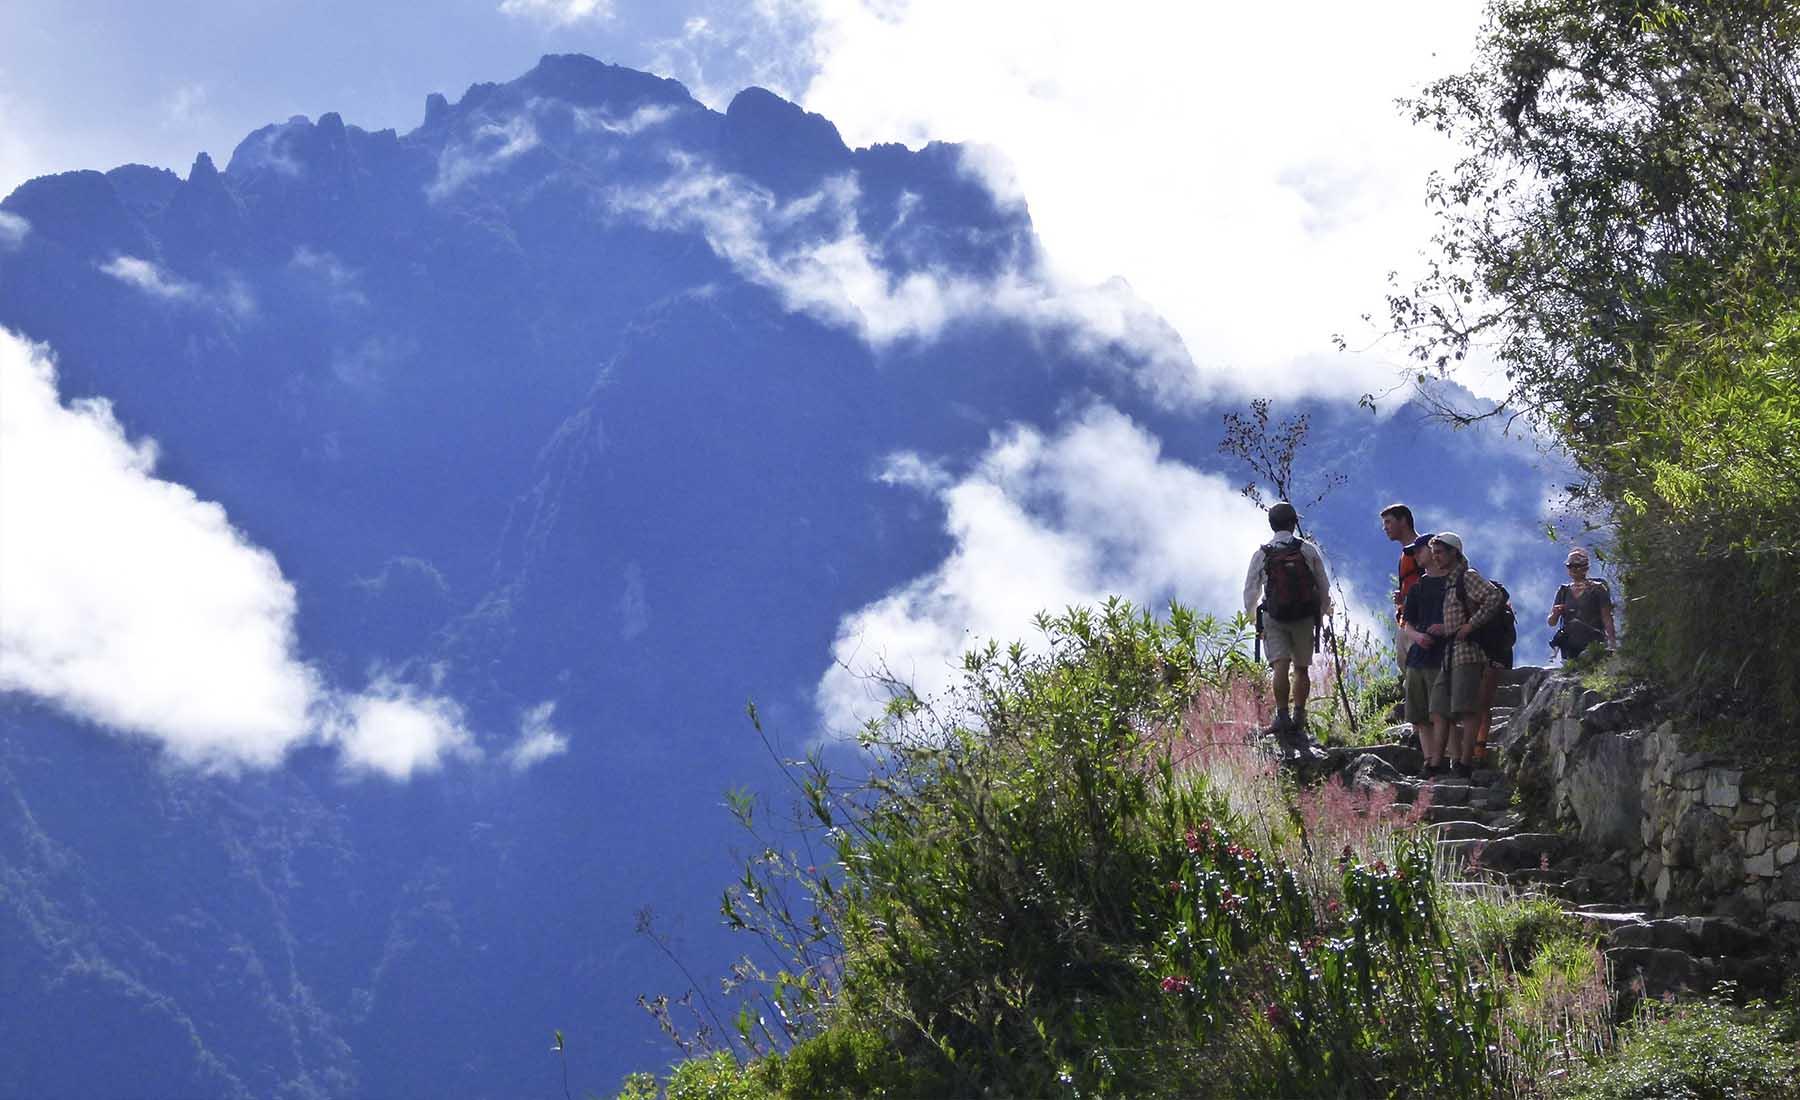 Inca Trails